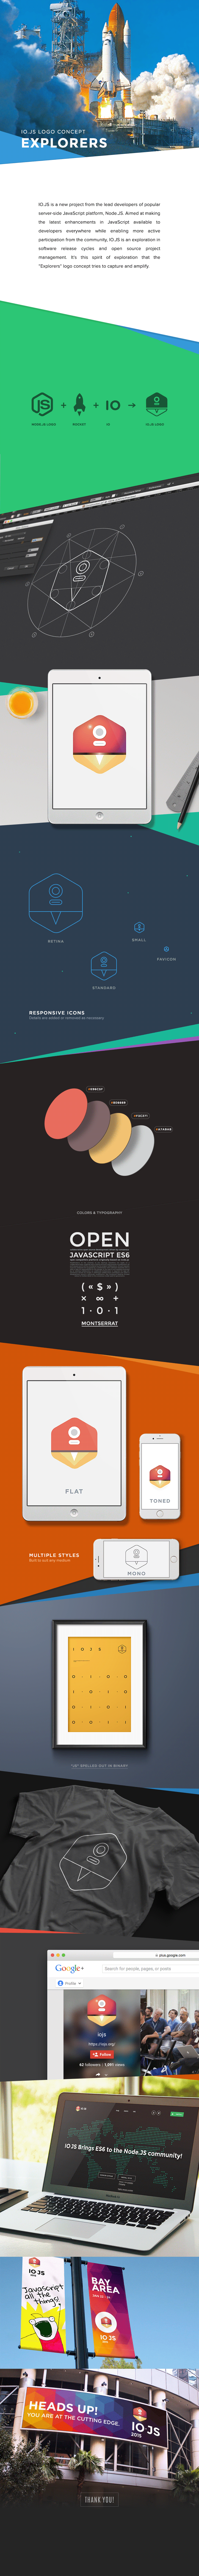 JavaScript js open source node node.js logo identity dffrnt.com dffrnt